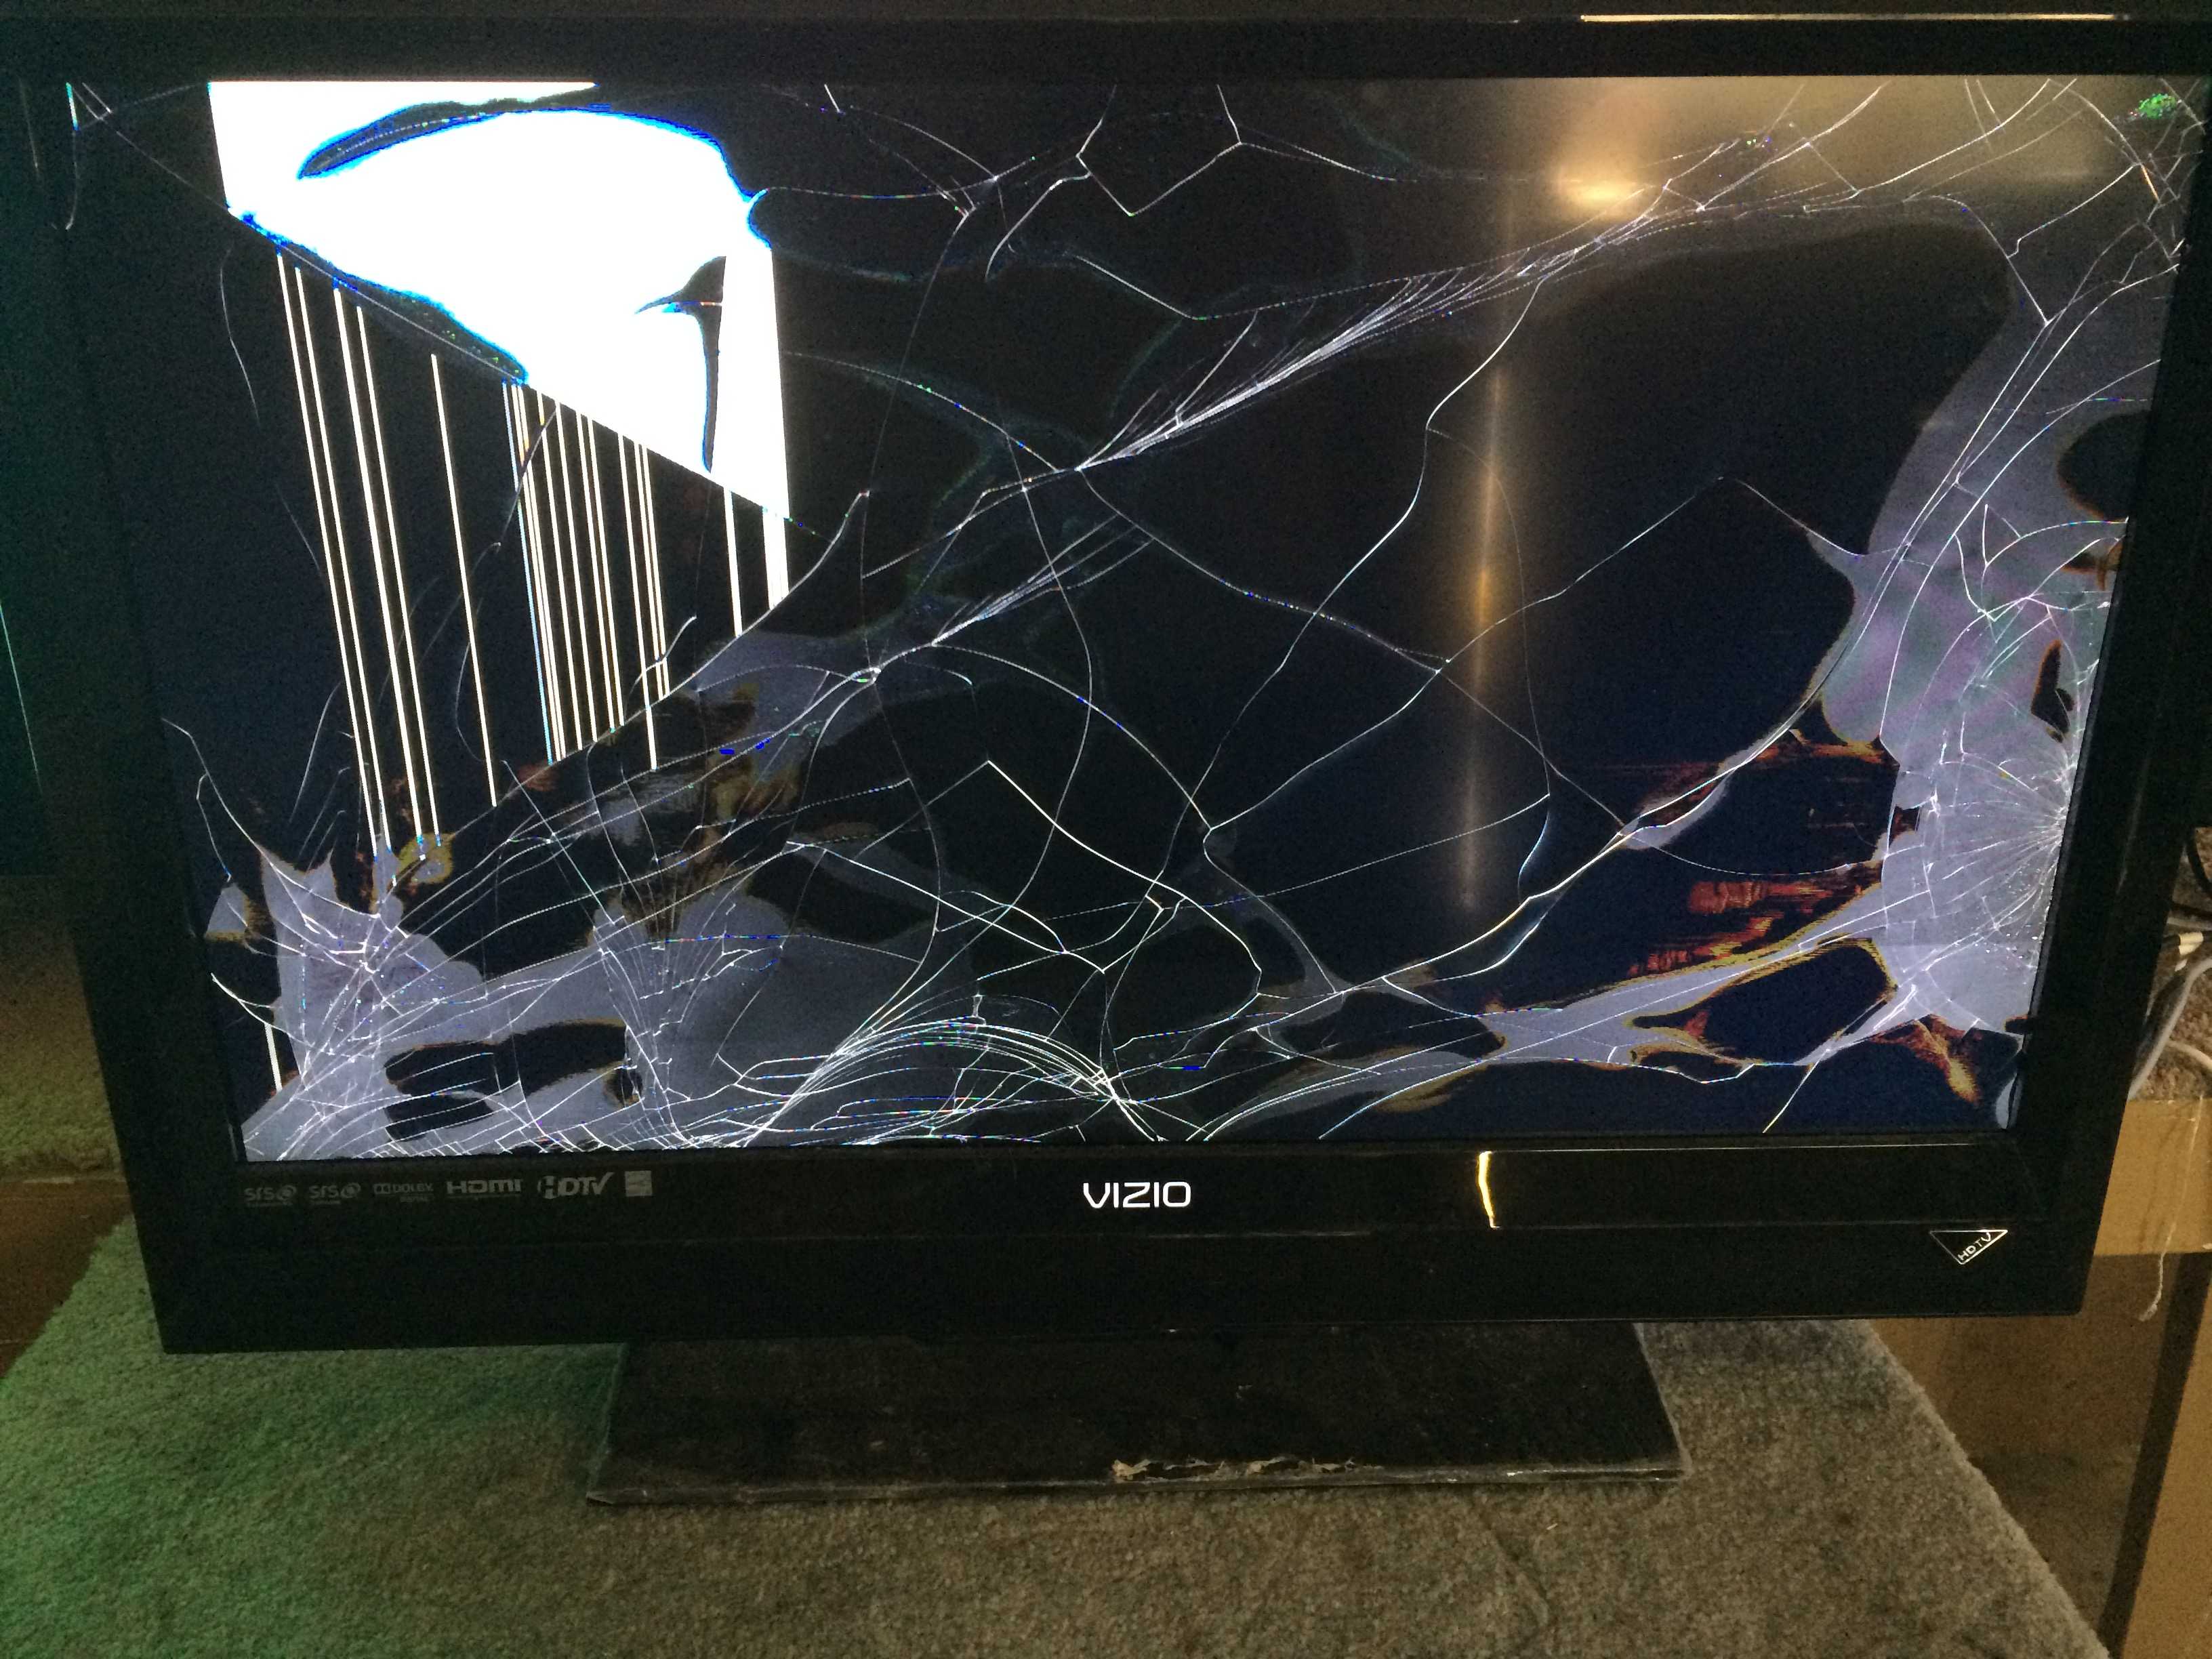 Треснул экран телевизора - что делать, как избавиться от трещины?